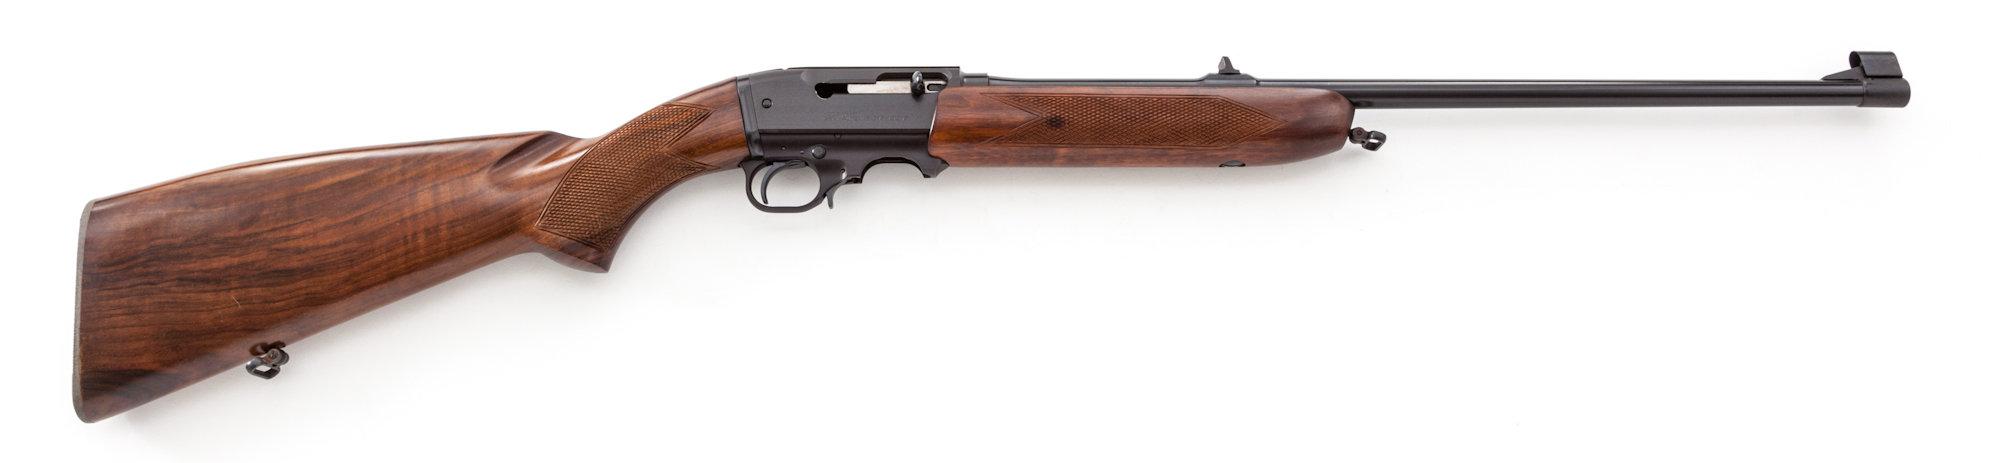 BRNO Model ZKM-611 Semi-Automatic Rifle